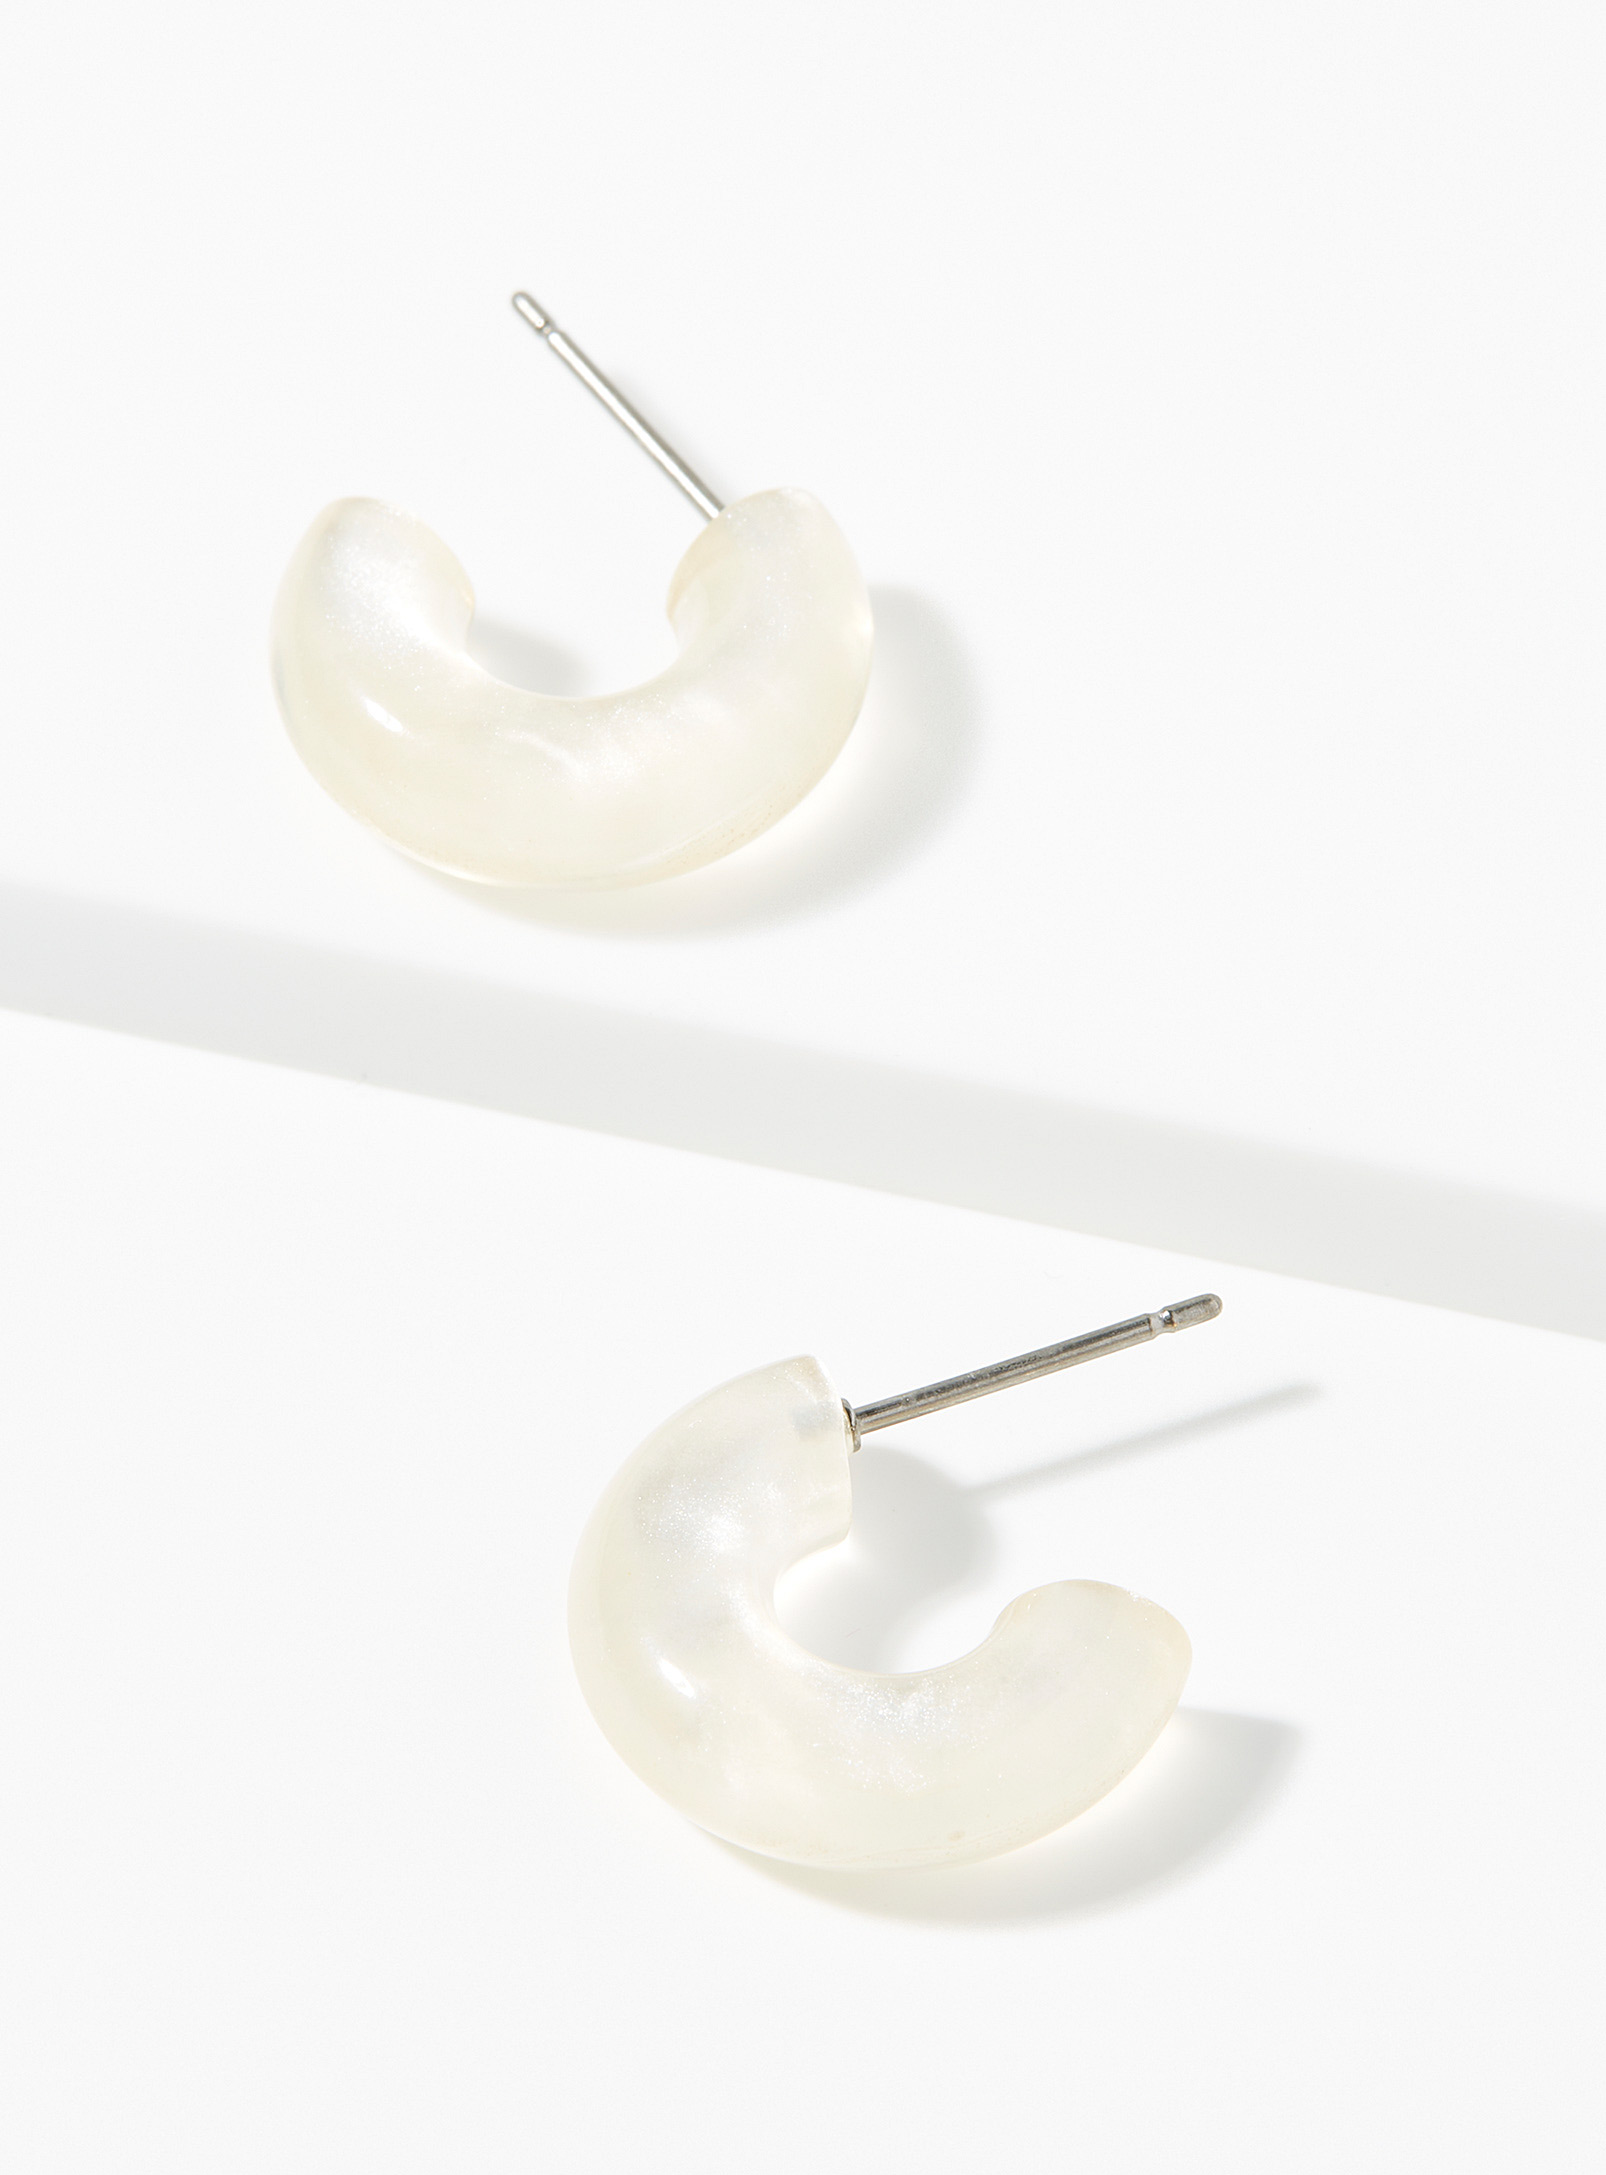 Simons - Women's Small translucent Hoop Earrings